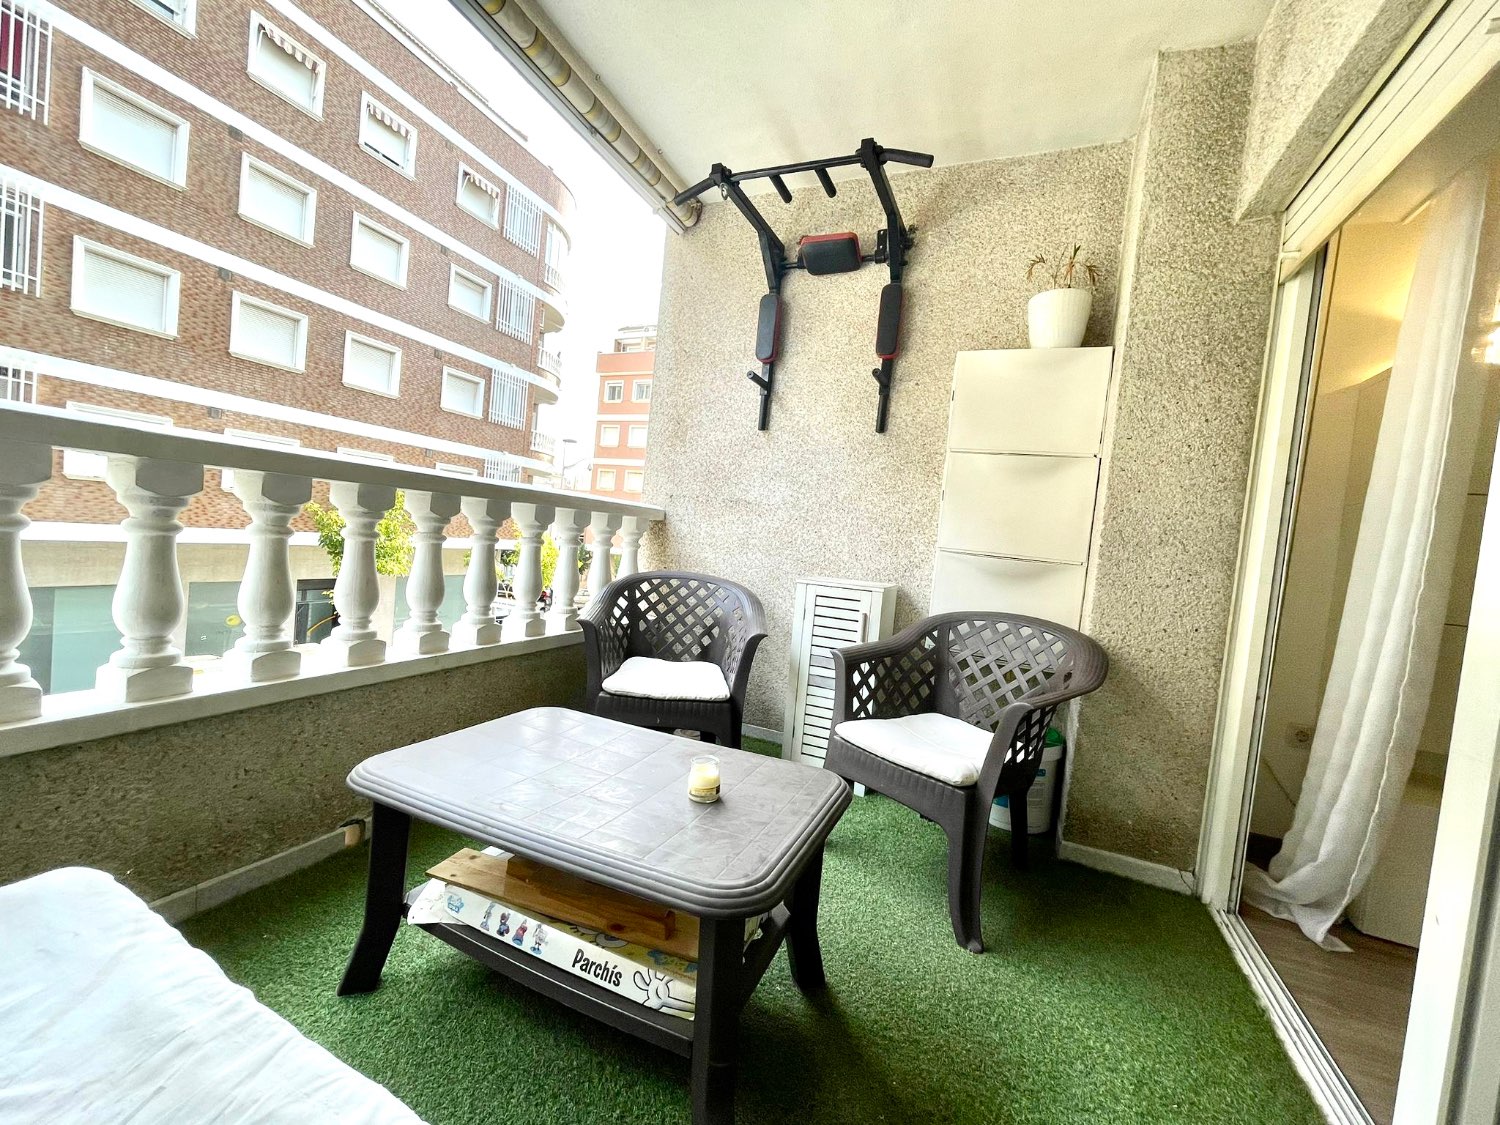 Estupendo apartamento reformado en el centro de Torrevieja con 2 dormitorios, 1 baño , plaza de garaje y trastero!